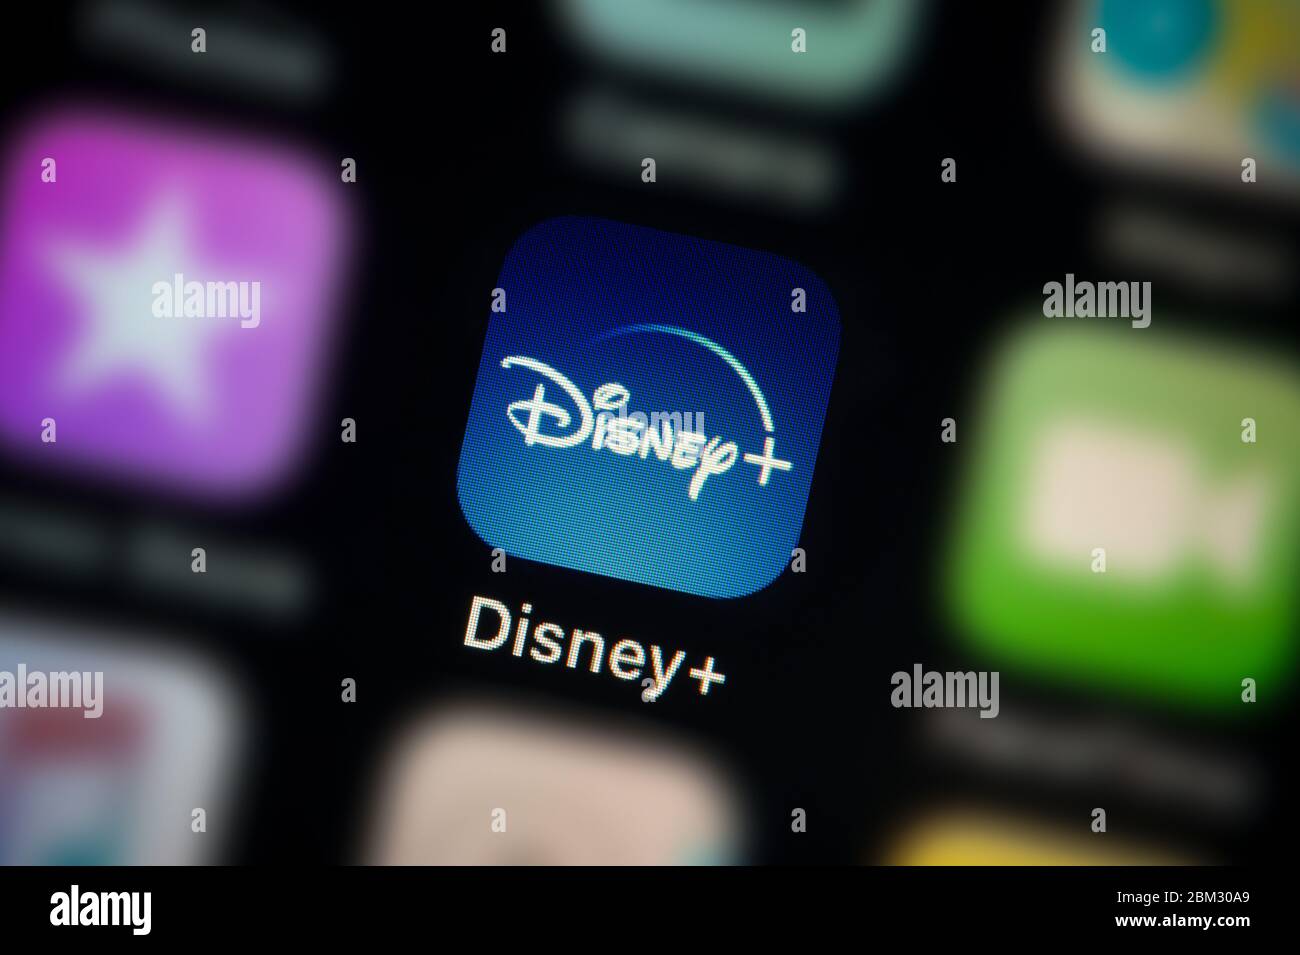 Gros plan de l'icône de l'application Disney+, comme illustré sur l'écran d'un smartphone (usage éditorial uniquement) Banque D'Images